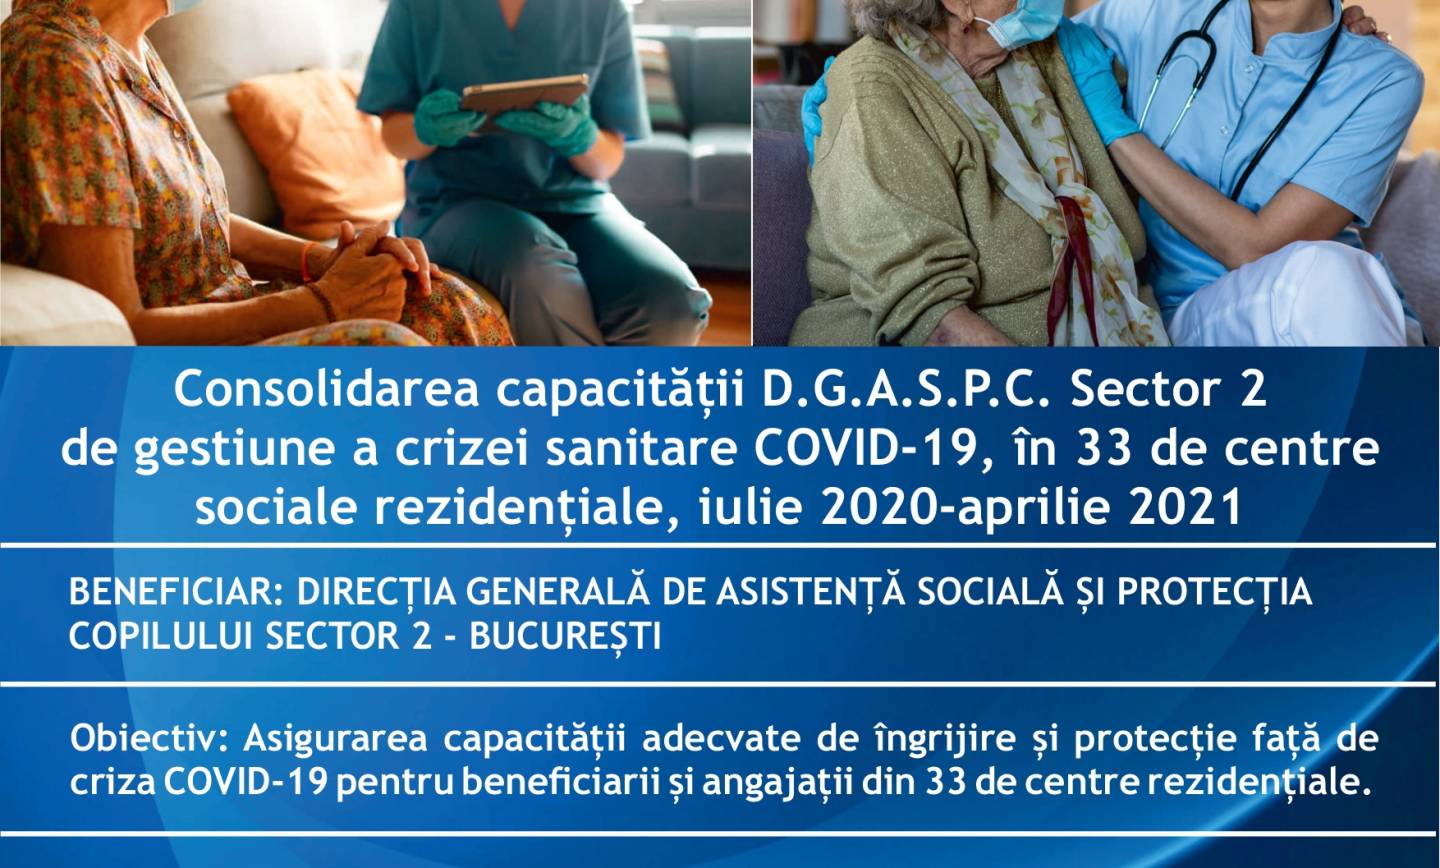 Anunț finalizare proiect – „Consolidarea capacității D.G.A.S.P.C. Sector 2 de gestiune a crizei sanitare COVID-19 pentru beneficiarii și angajații din centrele sociale rezidențiale pentru perioada iulie 2020 – aprilie 2021” – Cod proiect MySMIS2014+:  141791